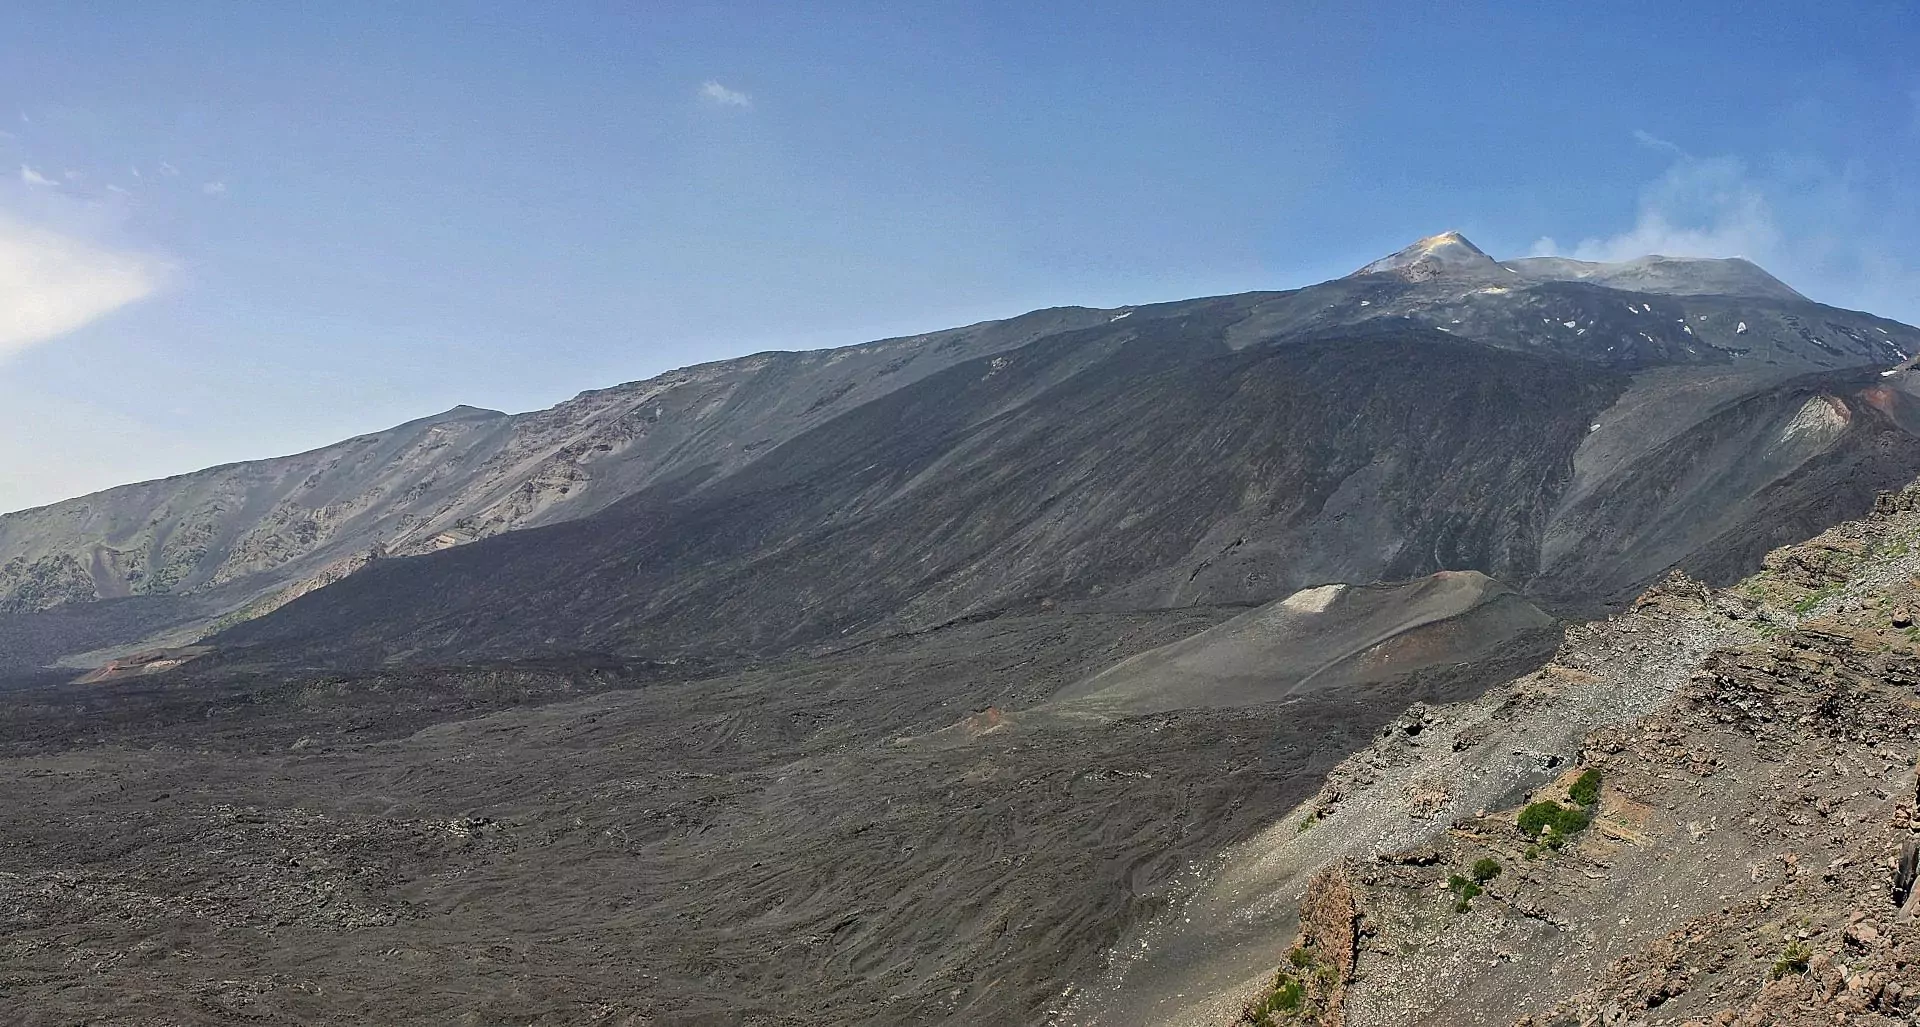 La Valle del Bove : une énorme entaille sur la face est de l'Etna, formée par l'effondrement de l'ancien sommet.